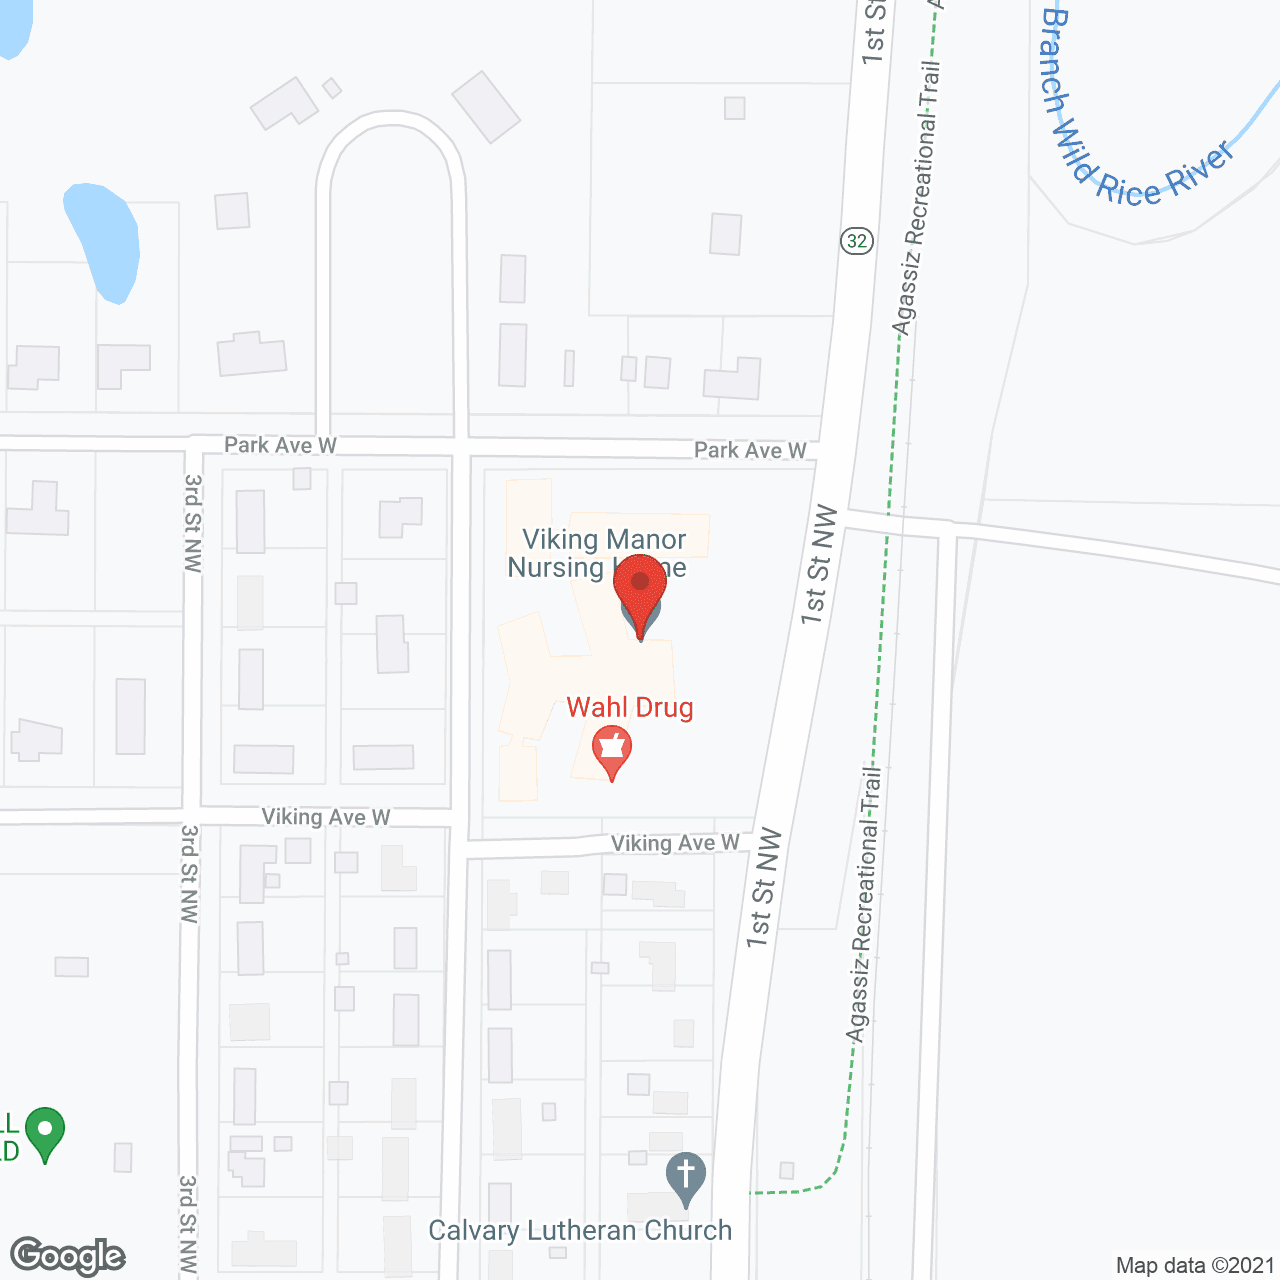 Viking Manor Nursing Home in google map